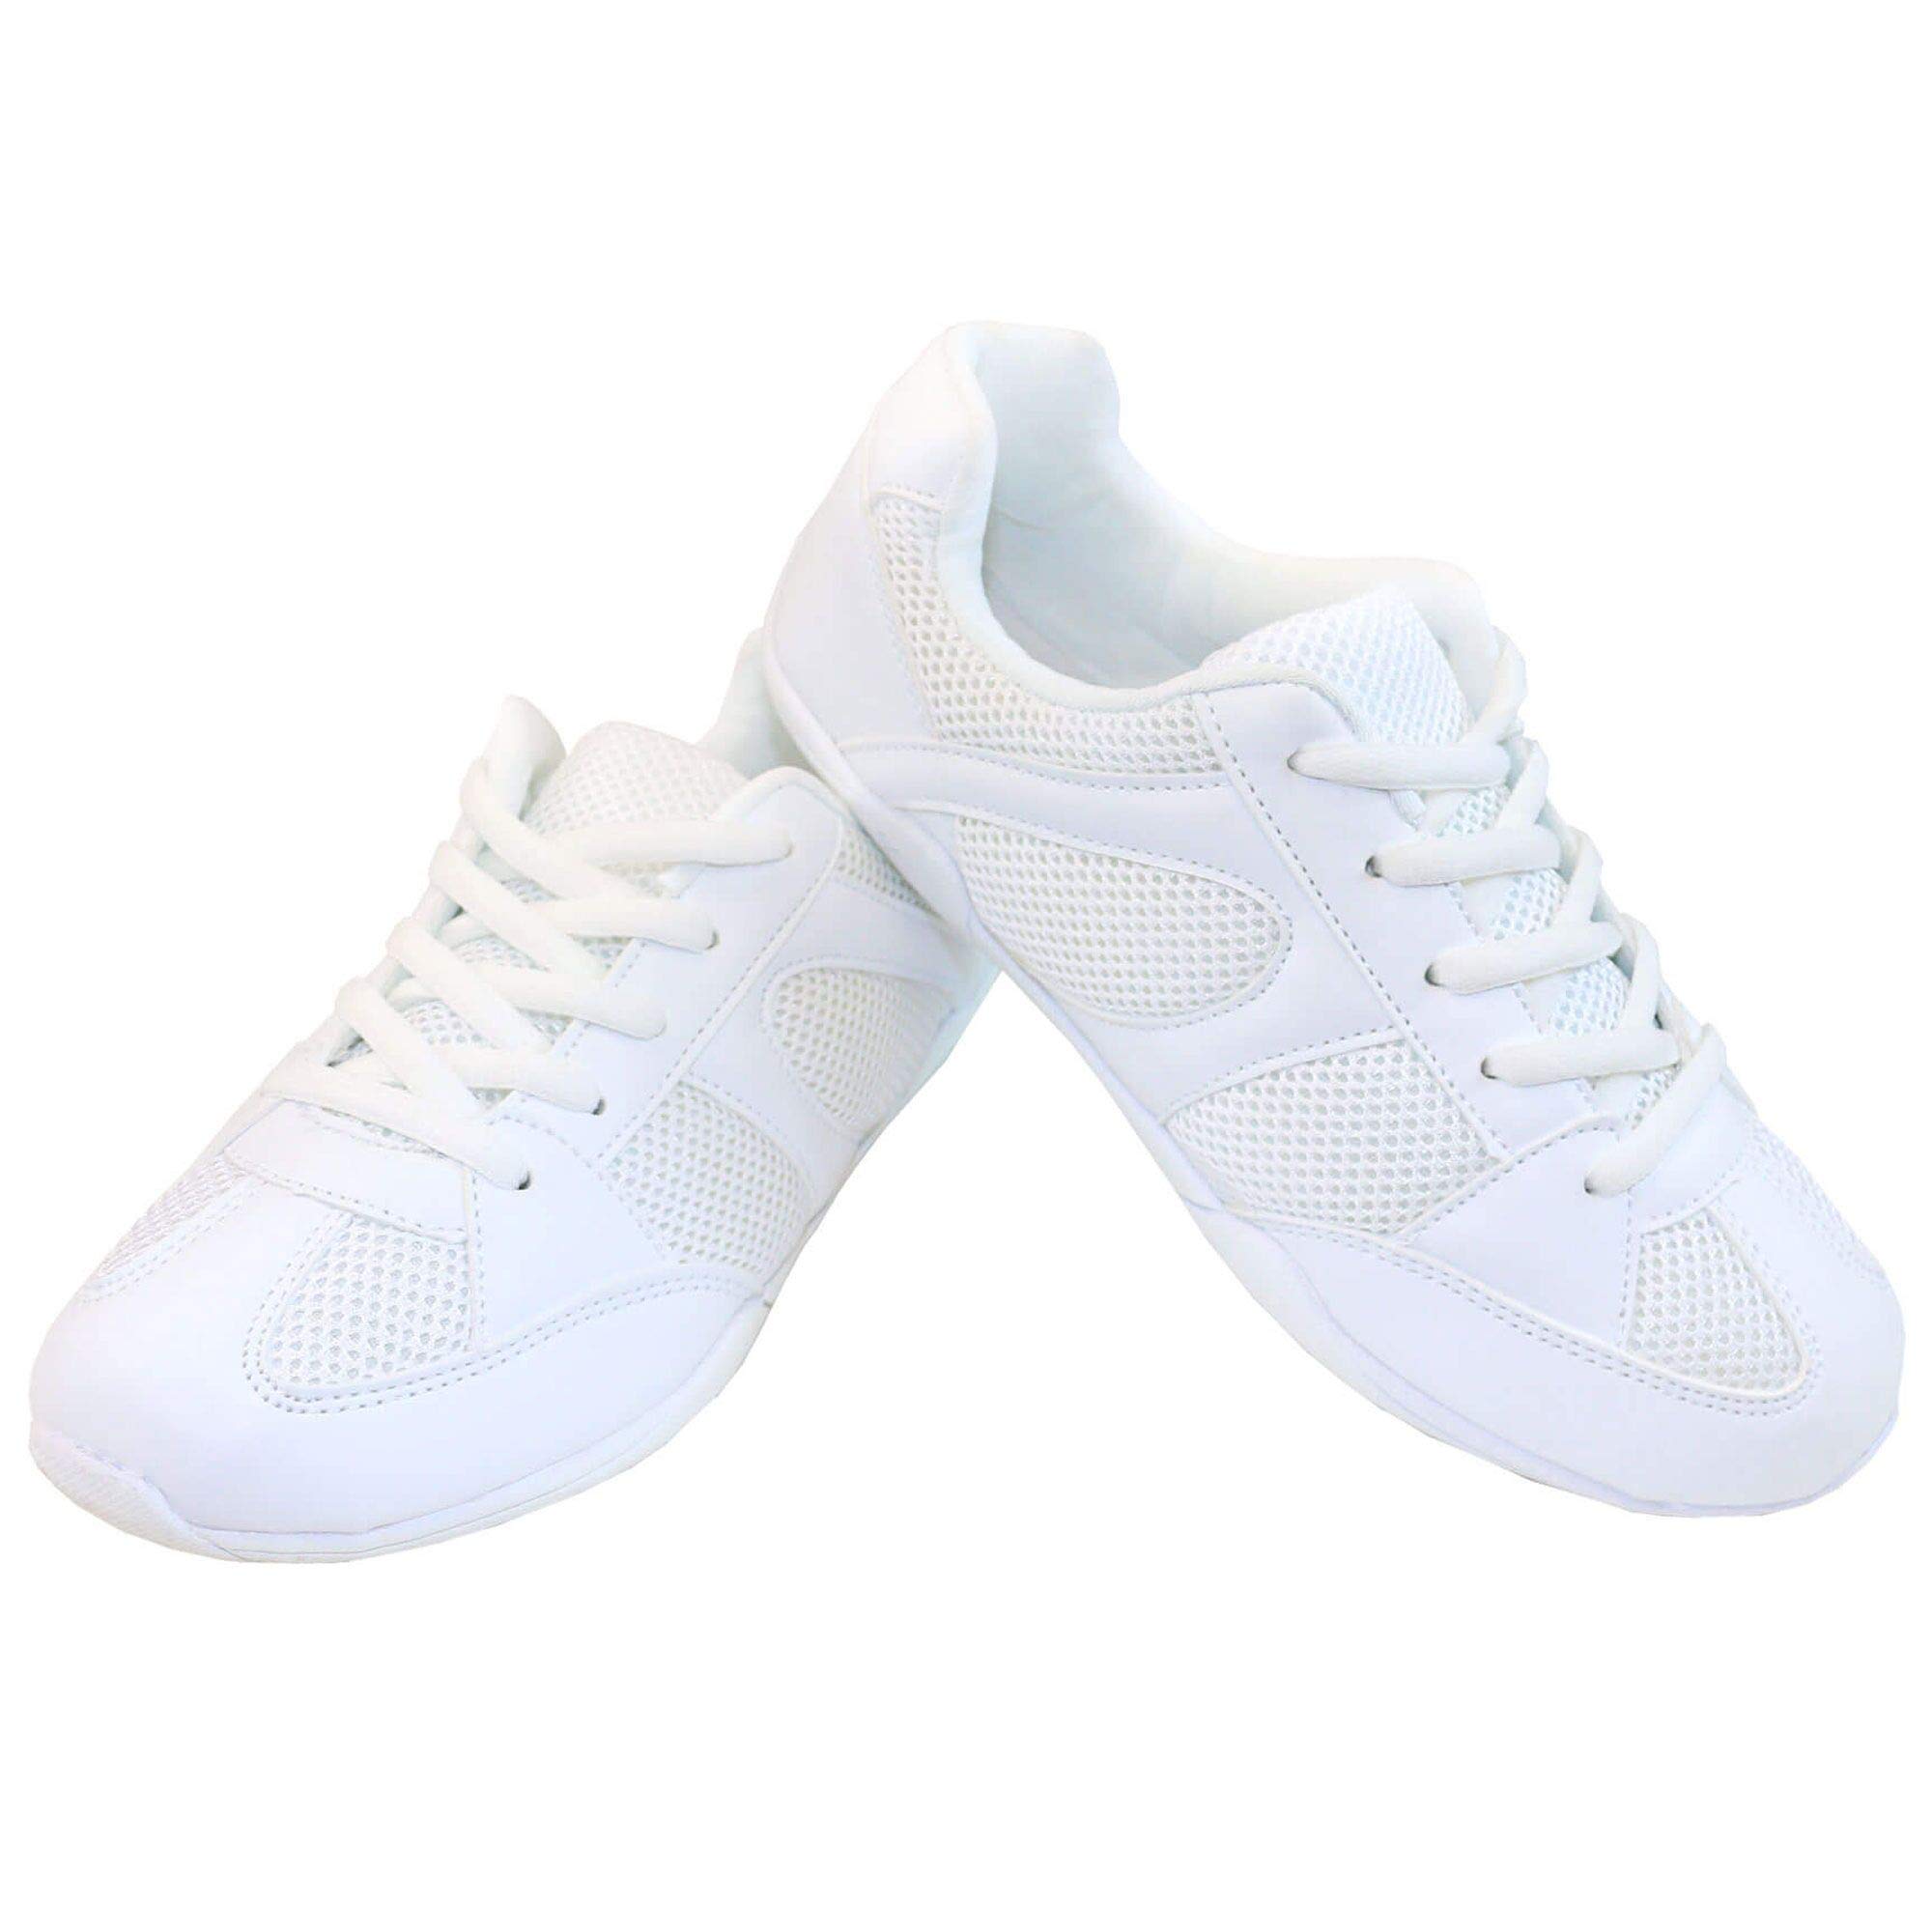 Danzcue Aurora Cheer Shoes, White, 7M